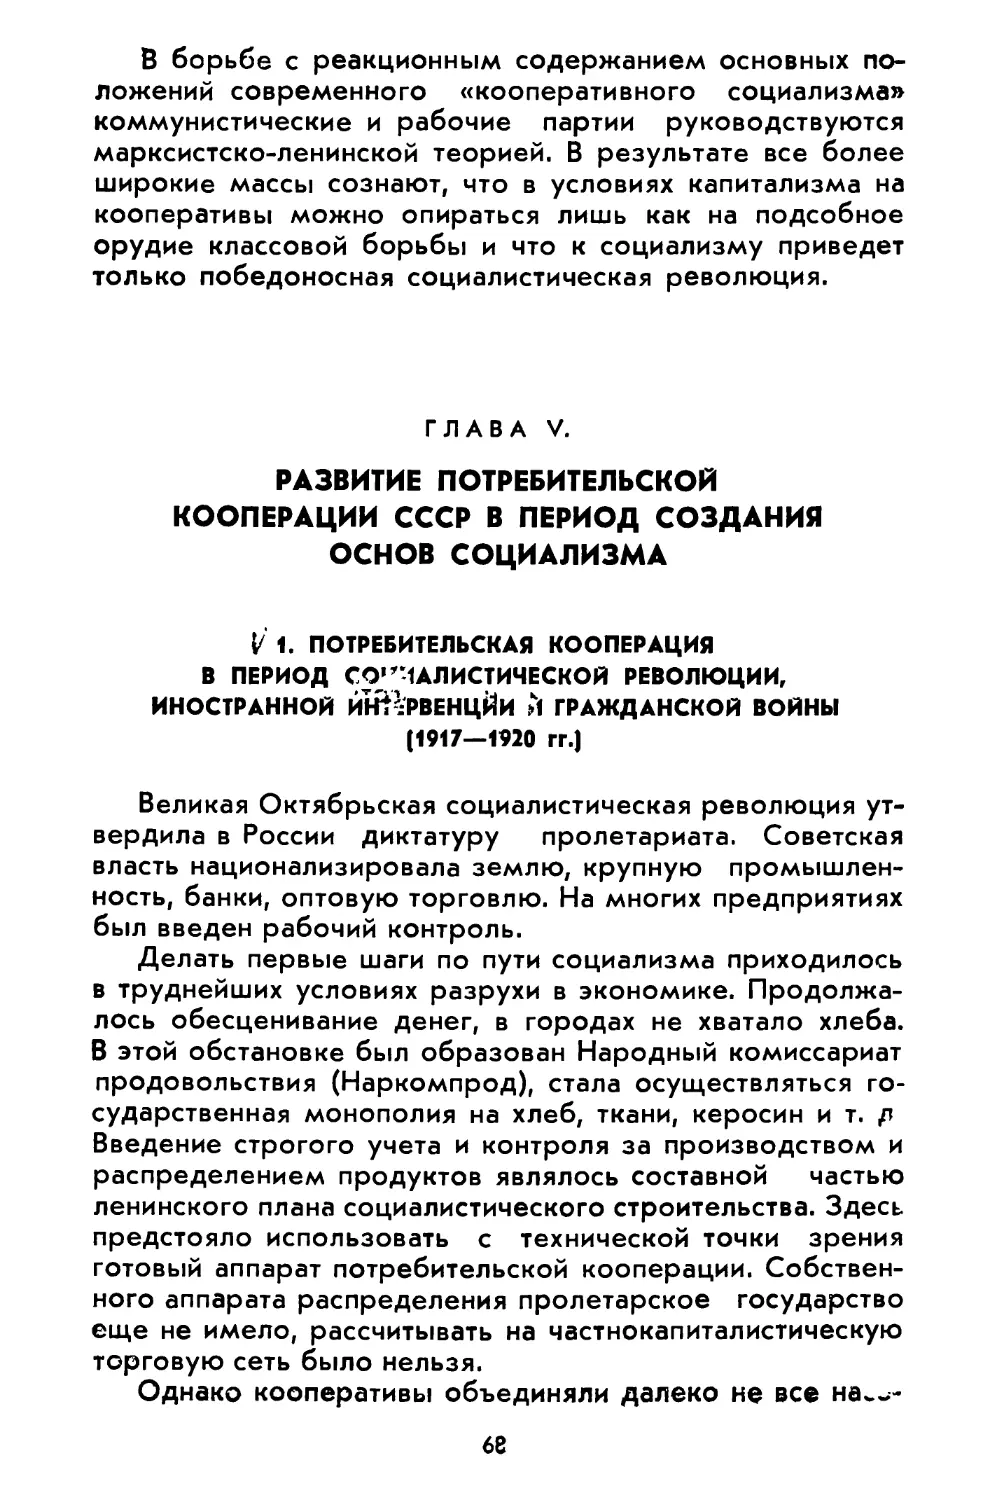 Глава V. Развитие потребительской кооперации СССР в период создания основ социализма